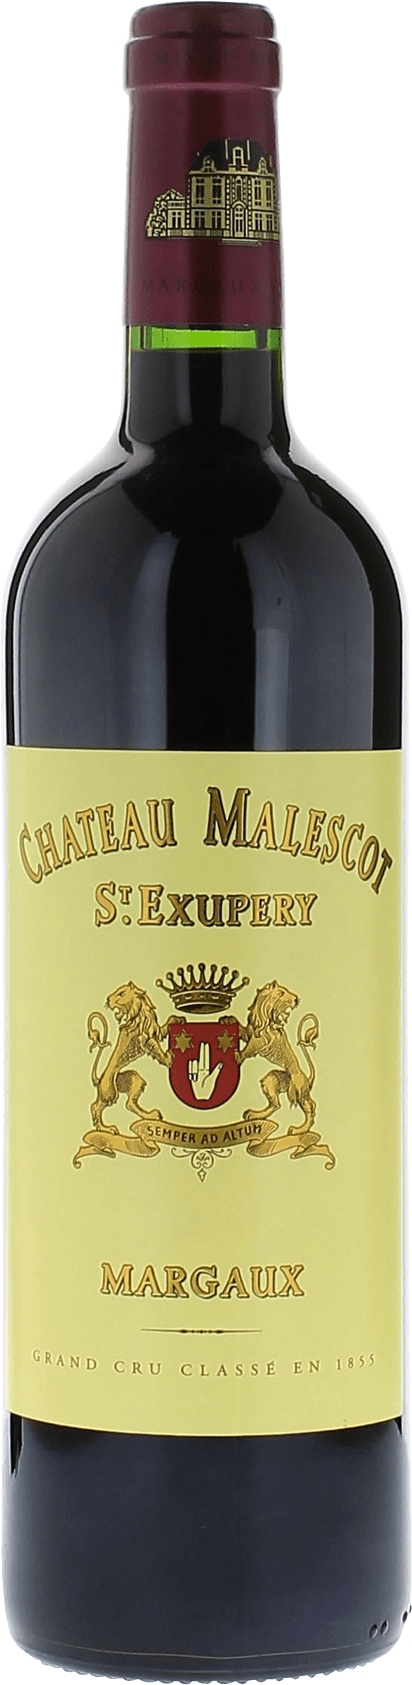 Malescot saint exupery 2009 3me Grand cru class Margaux, Bordeaux rouge